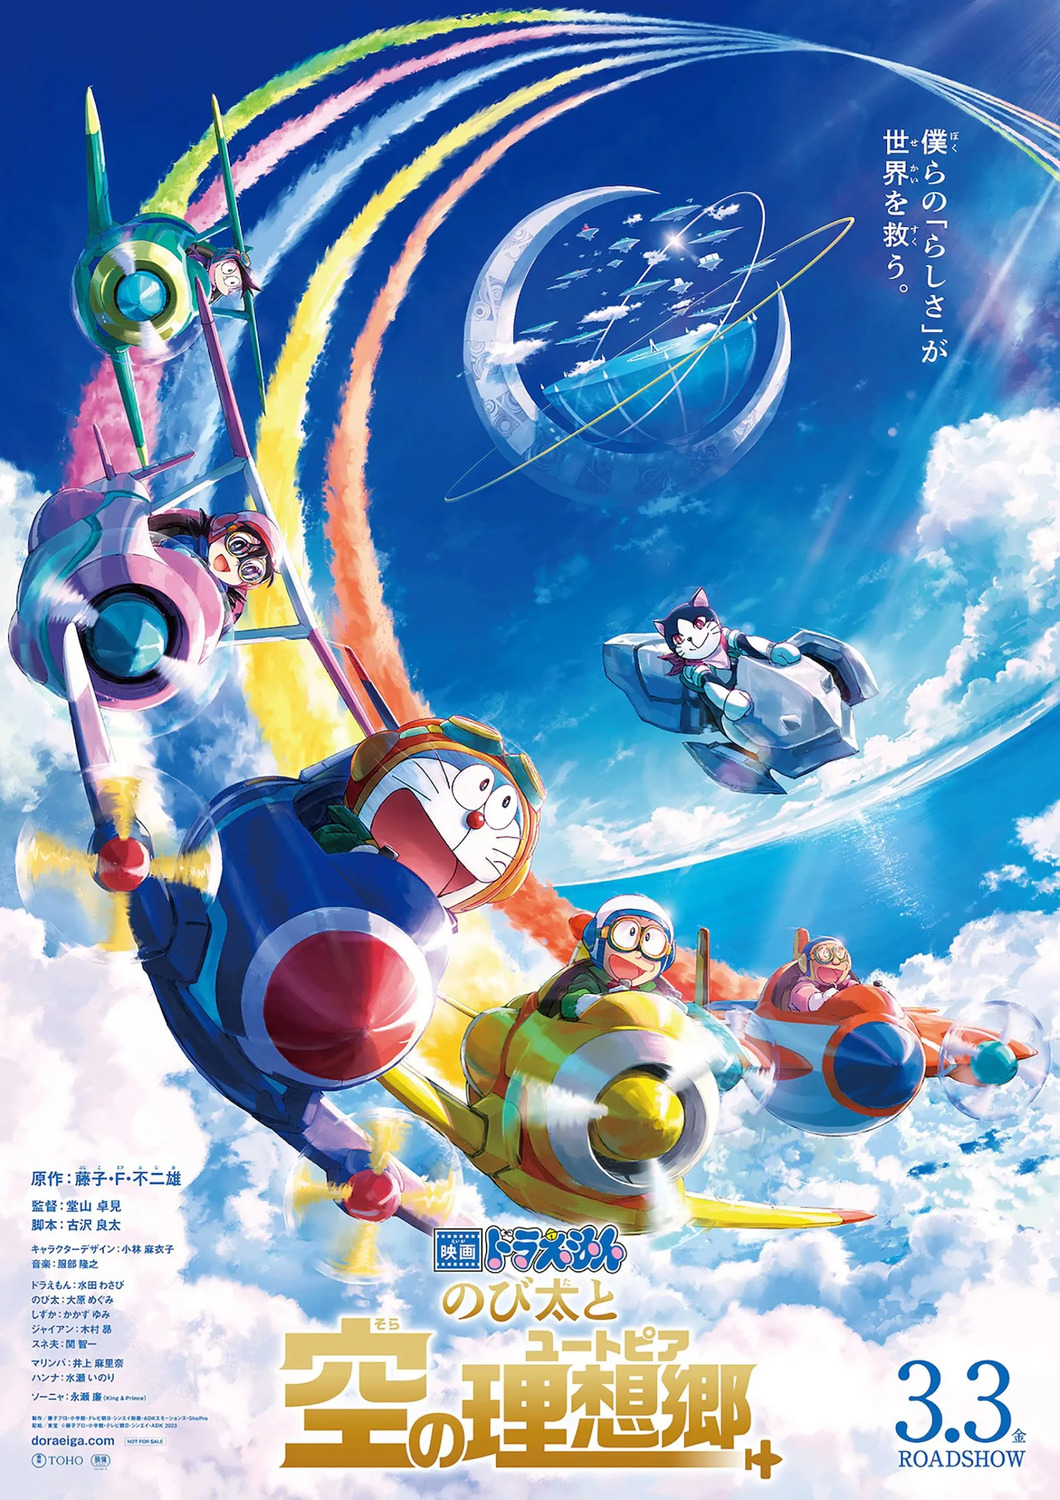 Extra Large Movie Poster Image for Eiga Doraemon: Nobita to Sora no Utopia (#2 of 2)